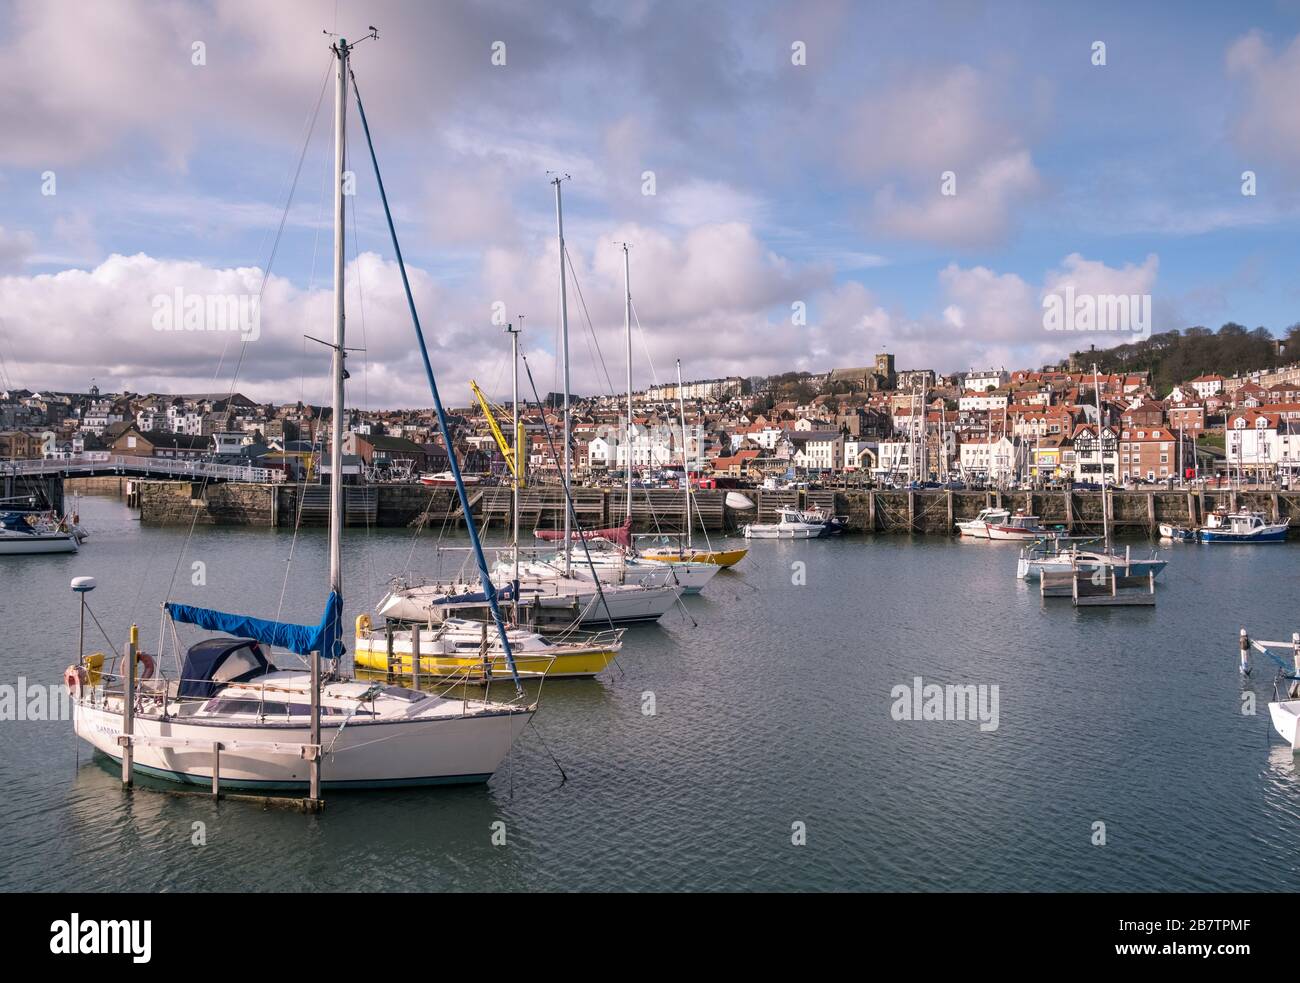 Porto di Scarborough, una tradizionale cittadina balneare sulla costa settentrionale dello Yorkshire, Inghilterra, Regno Unito Foto Stock